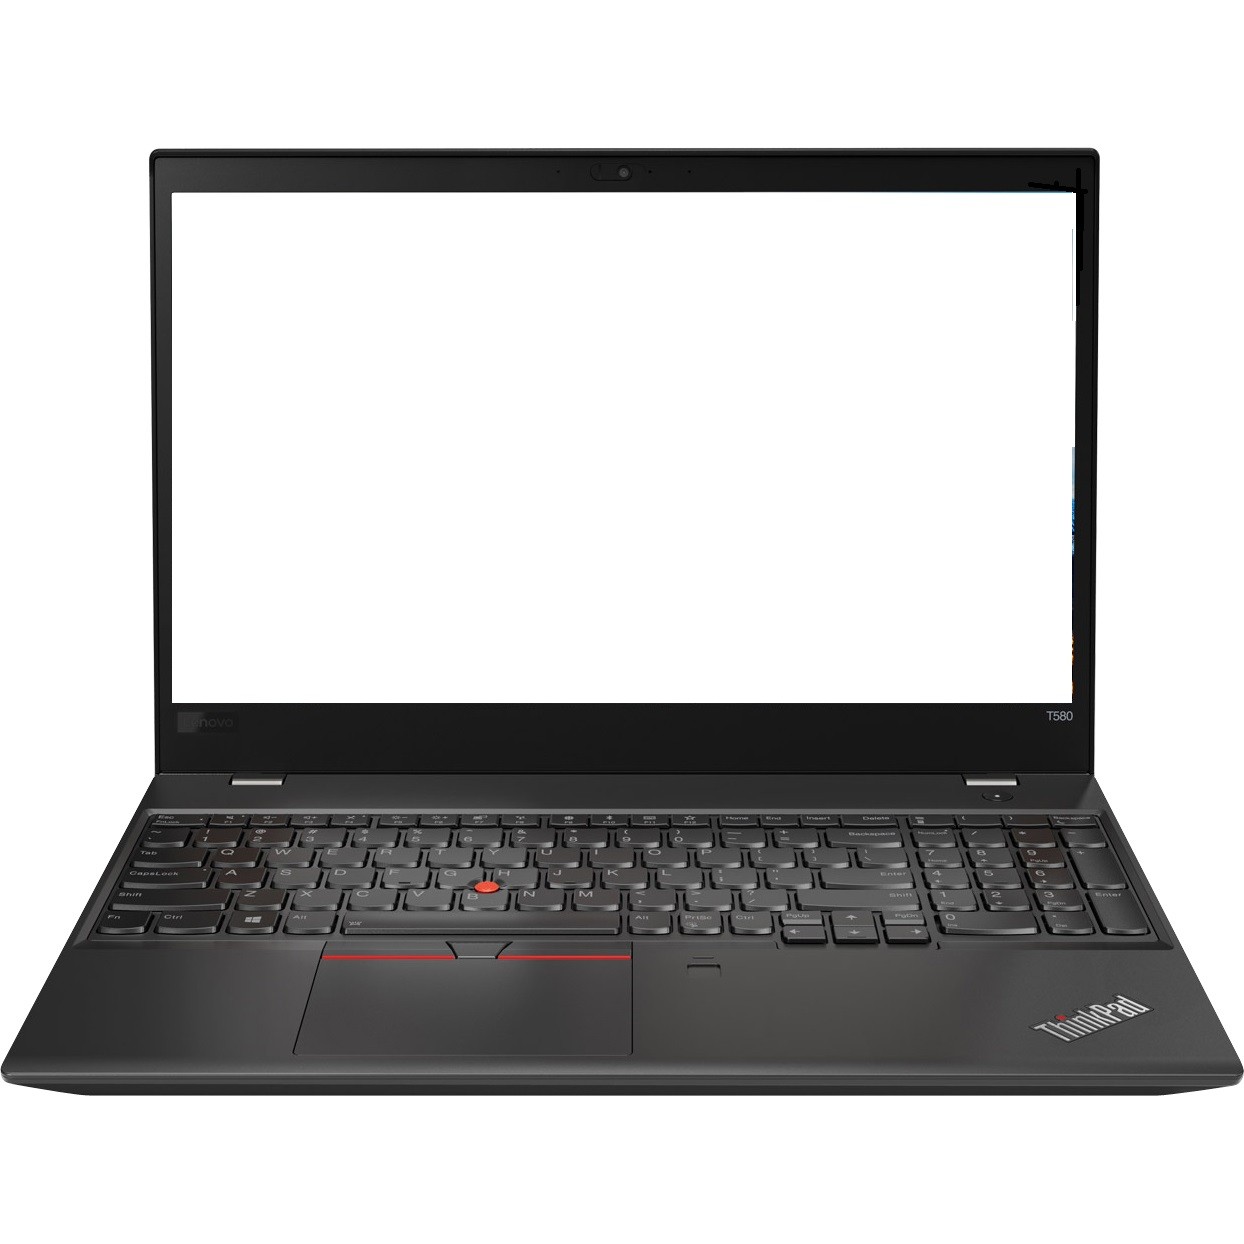 Lenovo ThinkPad T580 15.6" FHD i5-8350U 1.7GHz 8GB 256GB SSD W10P Laptop R